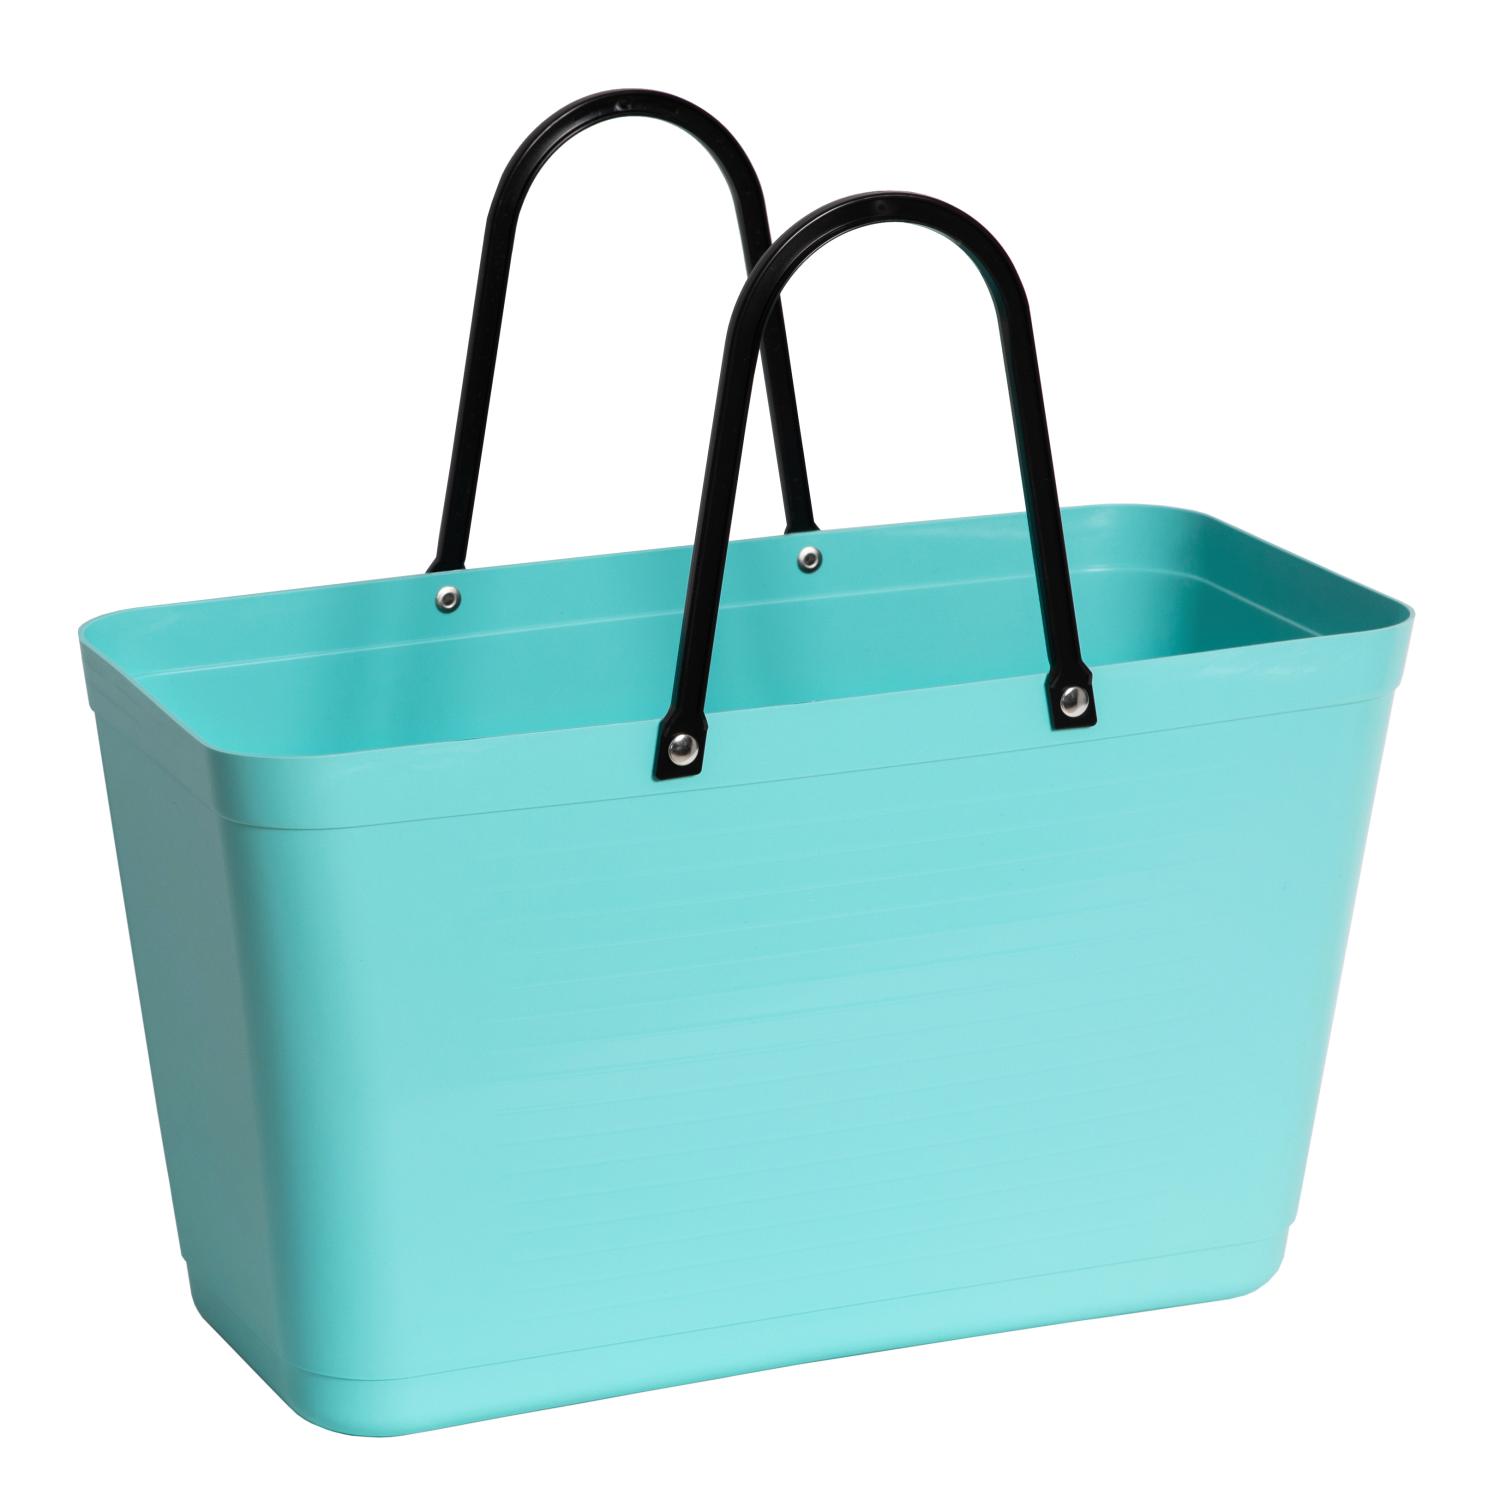 Hinza bag Large Aqua - Green Plastic